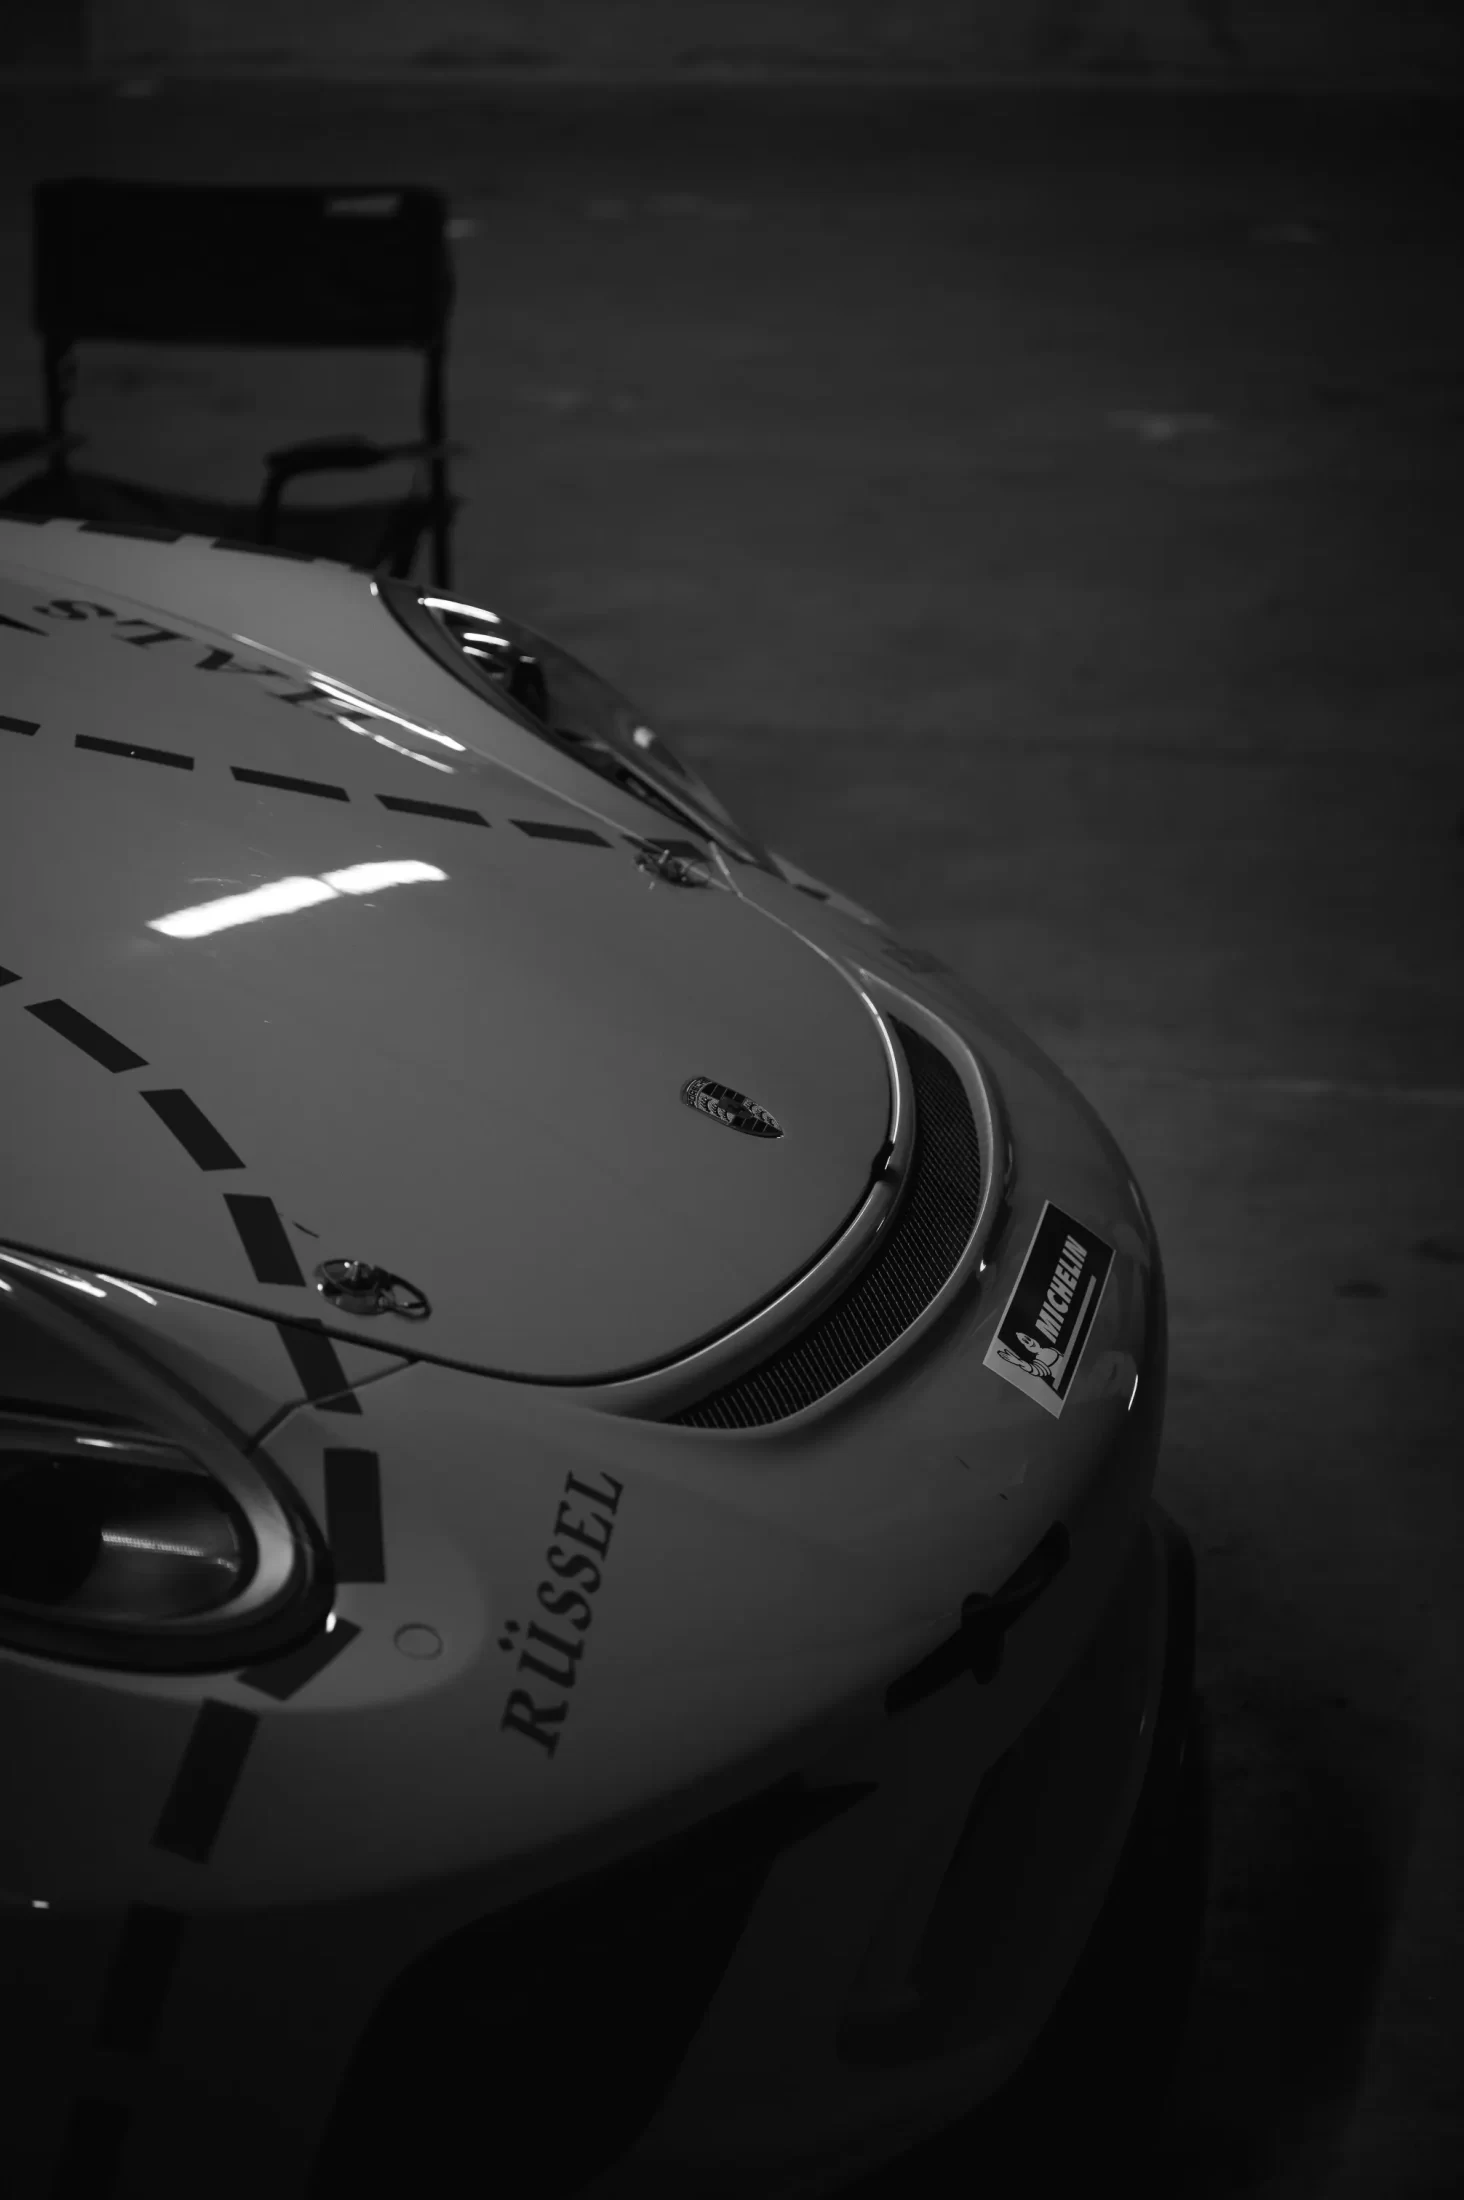 Porsche in pit box